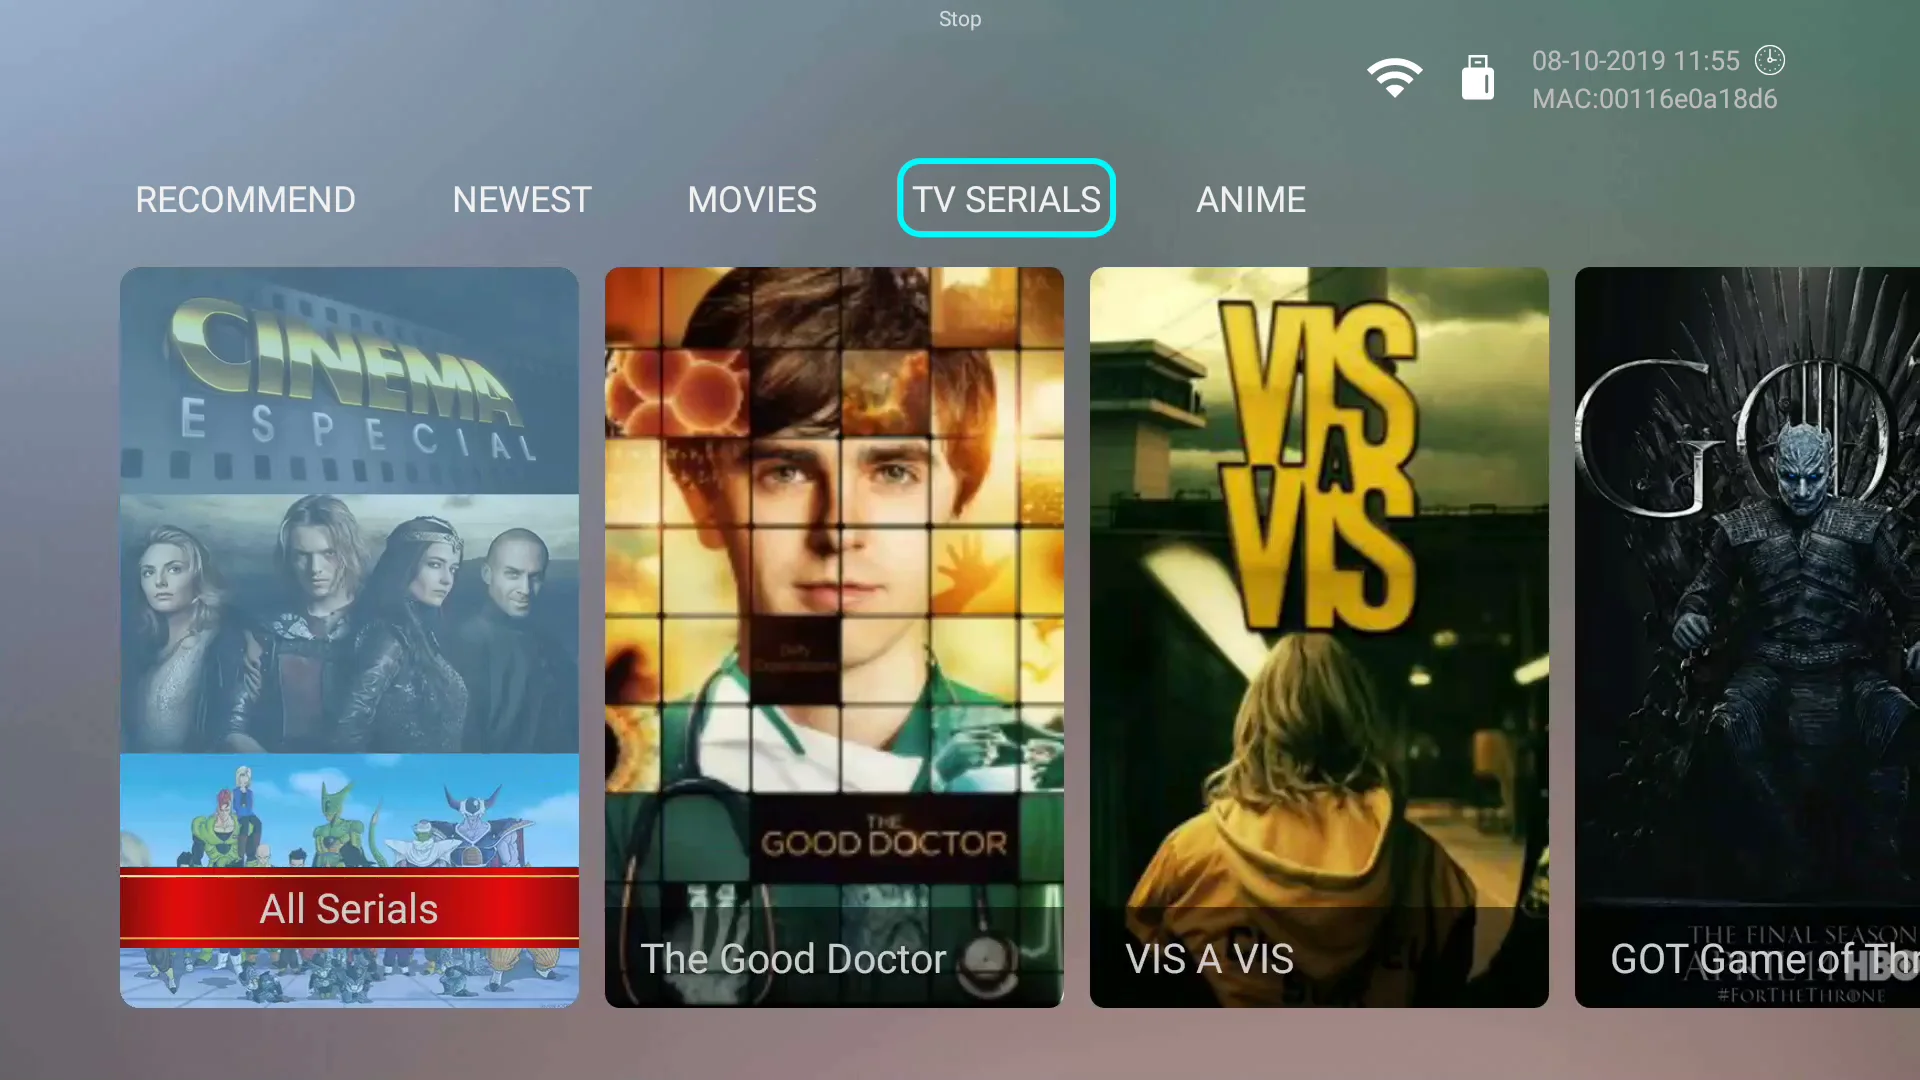 Бразилия IPTV Android box AI TAK Pro1 4K бразильские Бесплатные Каналы подписки с VOD воспроизведения и Live HTV, BTV